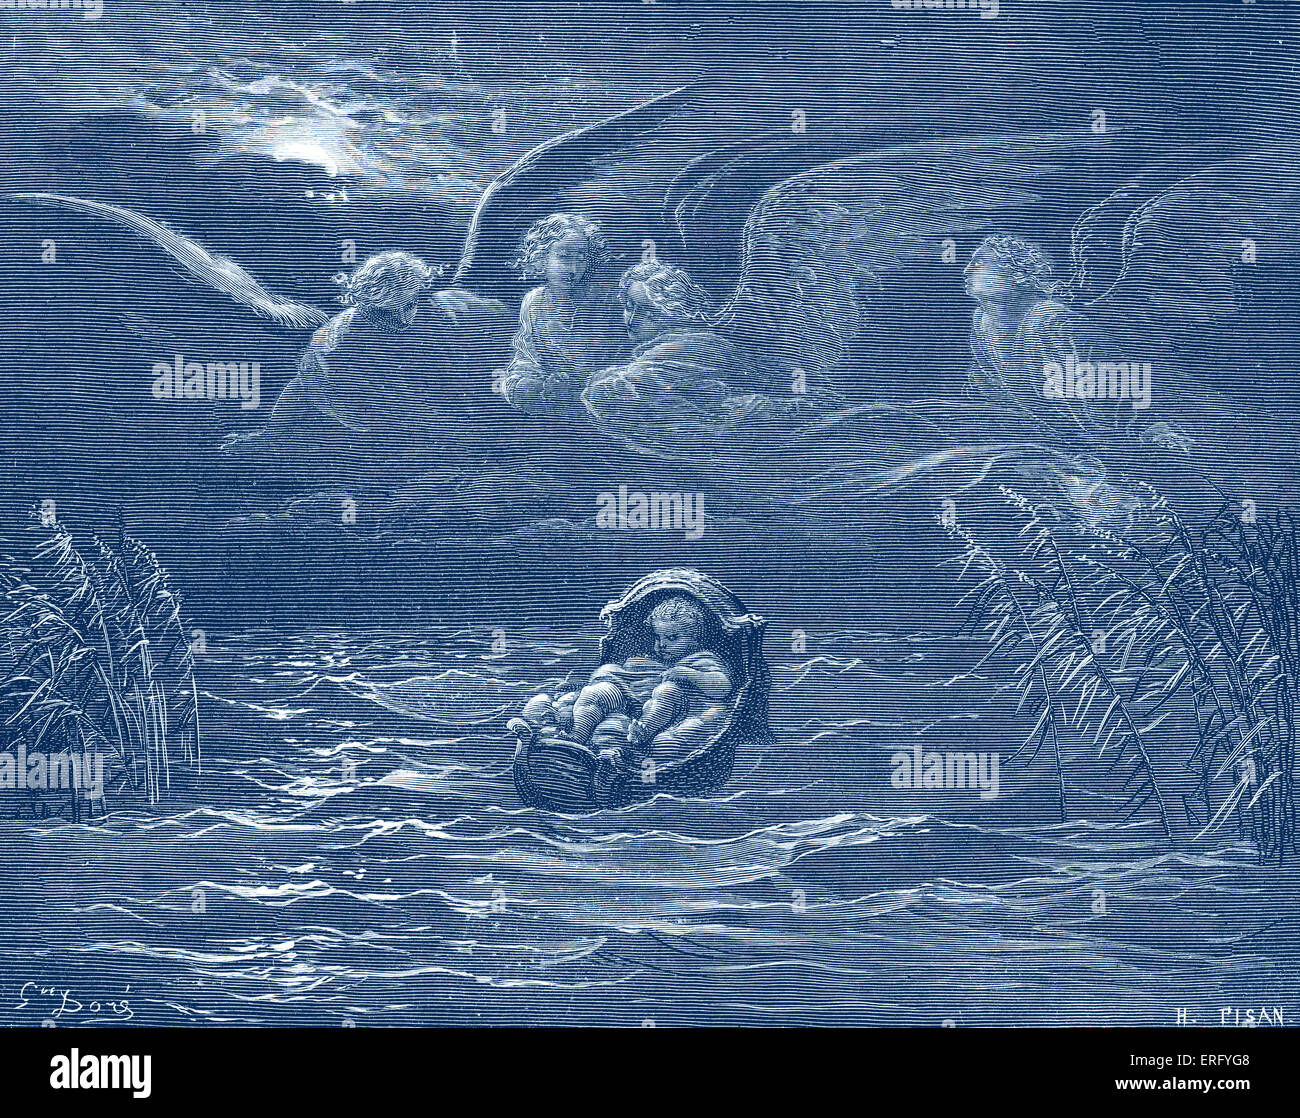 Mosè sul fiume Nilo in una cesta di giunchi, esodo Ch 2. Disegnata da Gustave Doré, artista francese, b 6 Gennaio 1832 - 23 gennaio 1883. Incisi da H il pisano. Foto Stock